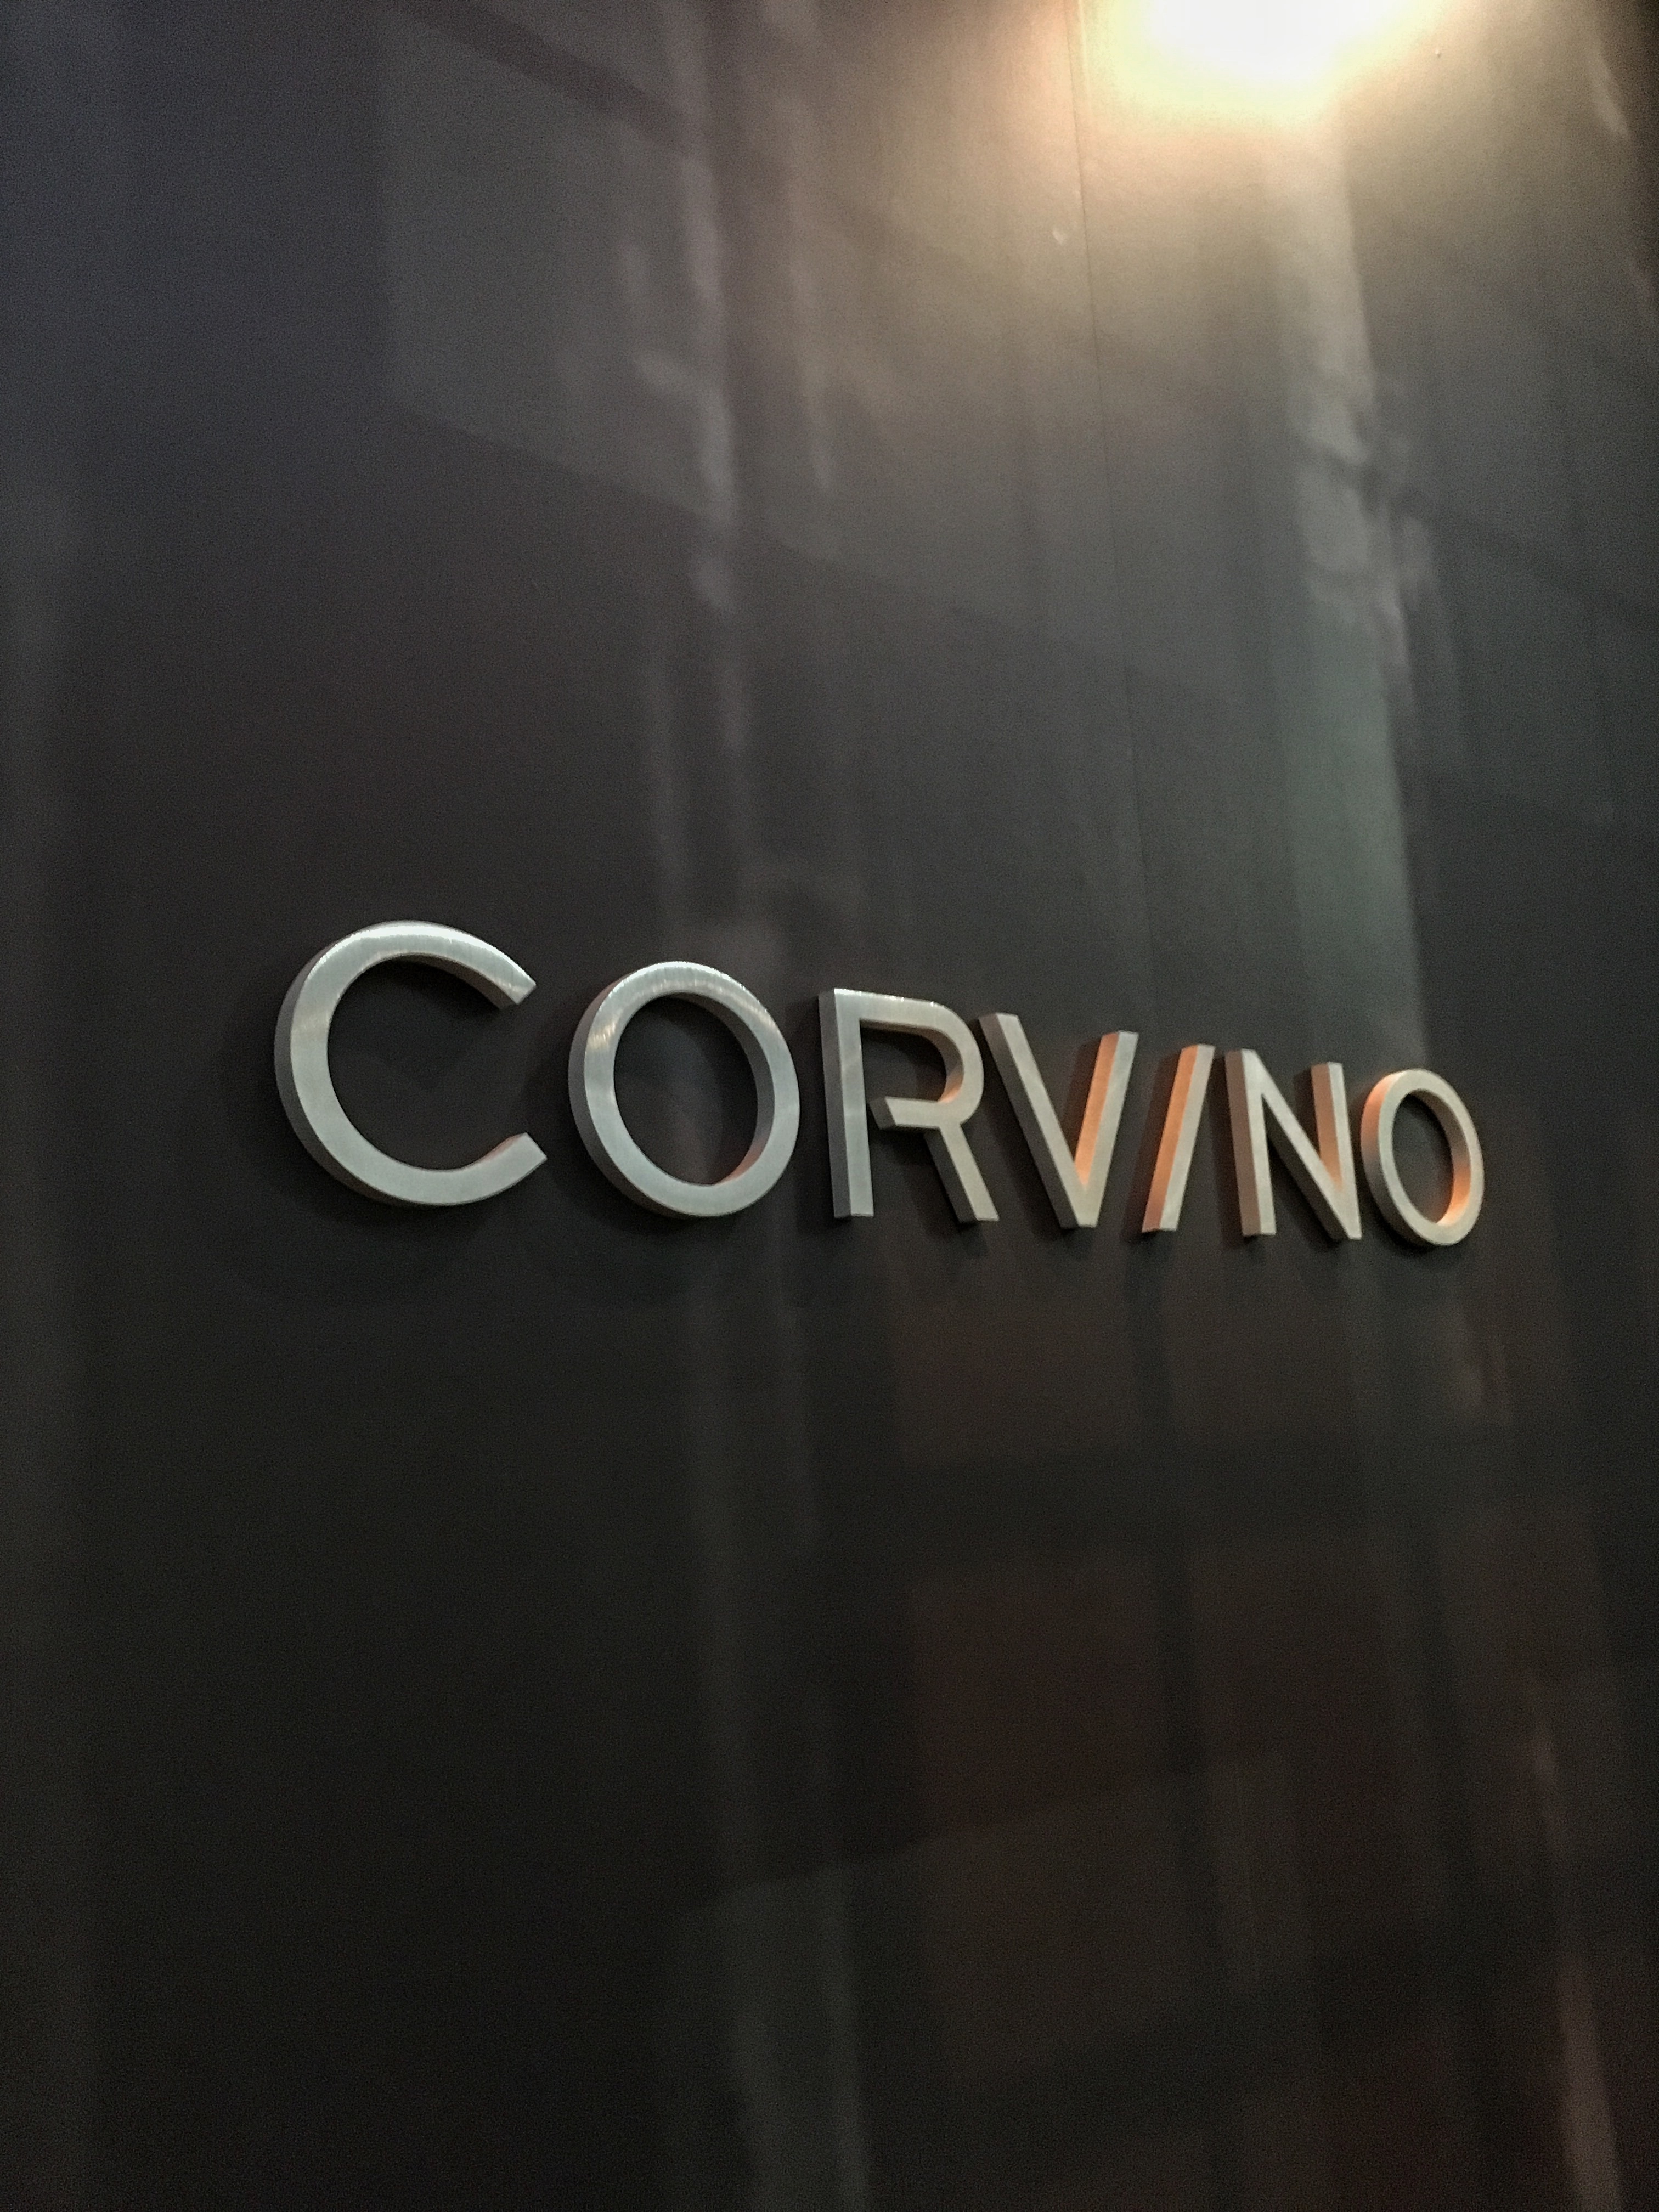 Corvino Supper Club & Tasting Room